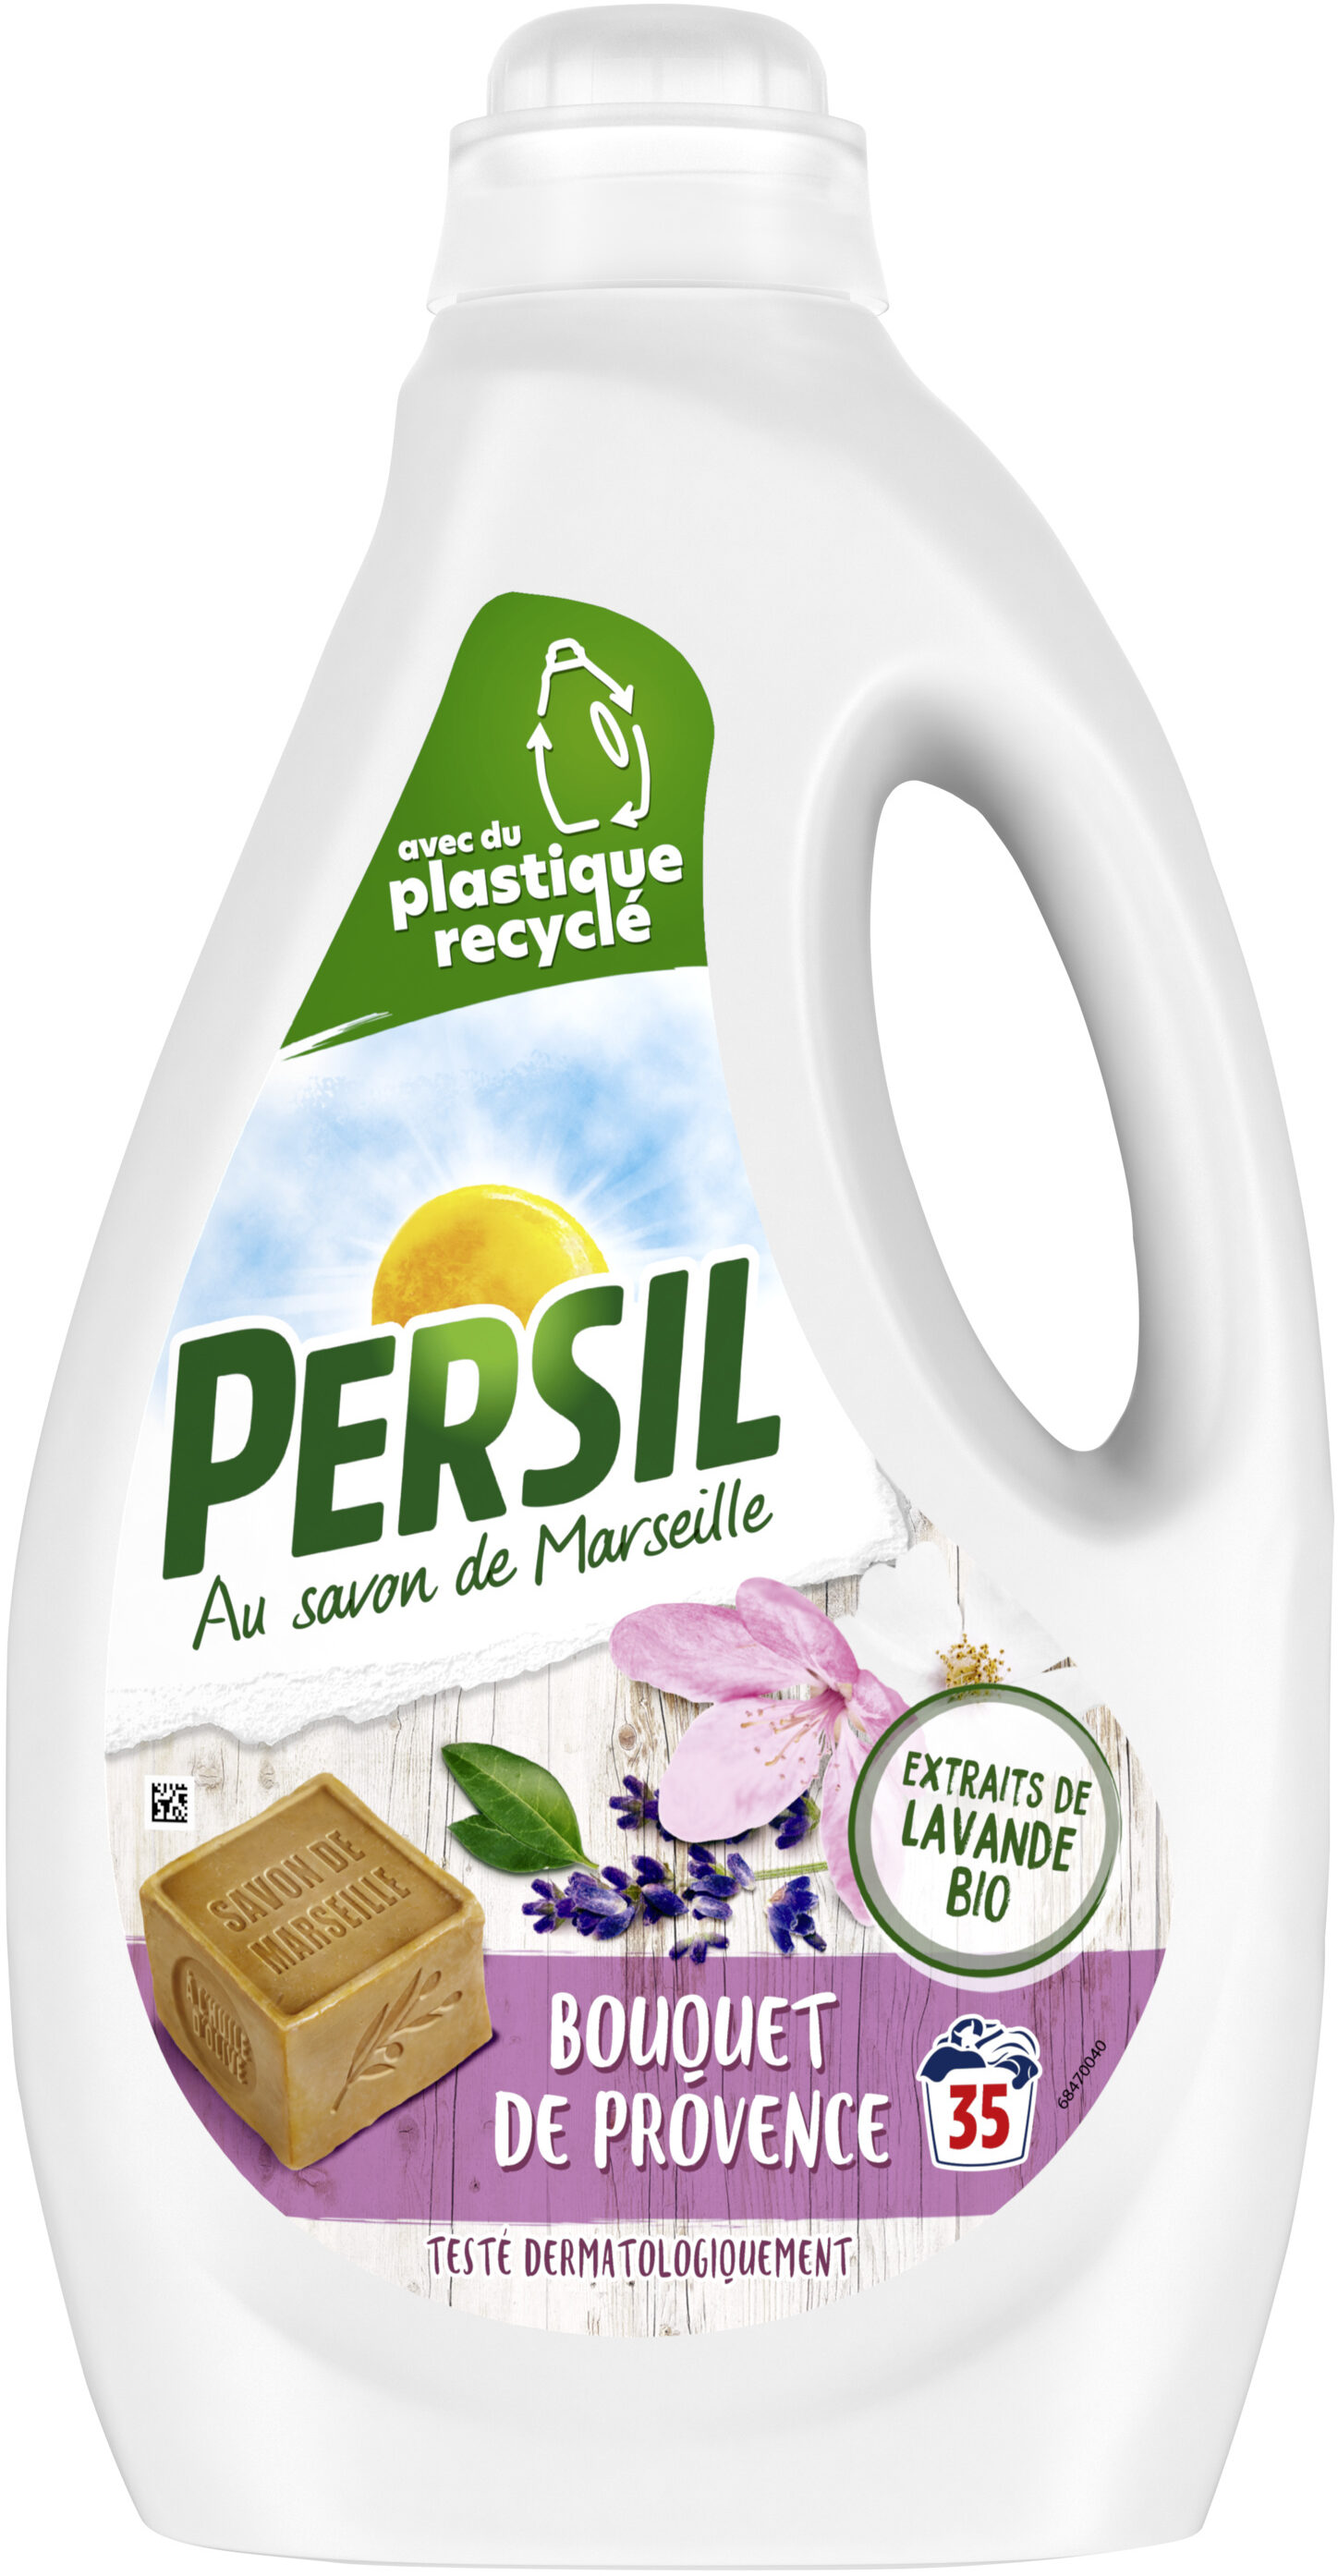 Persil Lessive Liquide Bouque de Provence 1.75L - 35 Lavages - Product - fr